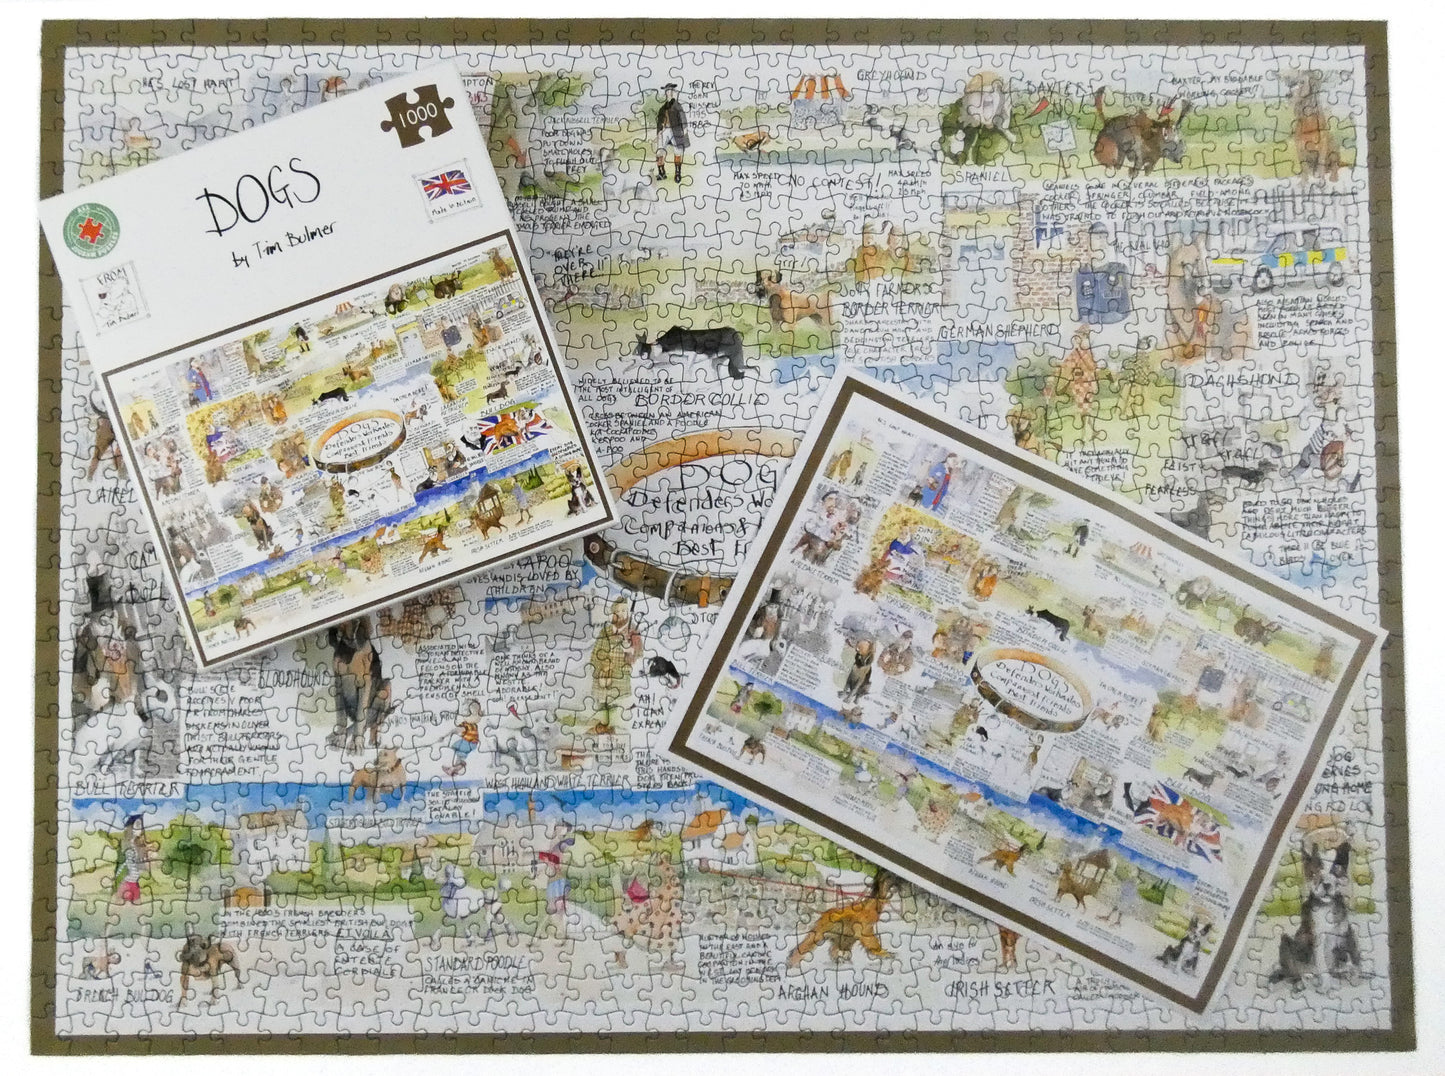 Dogs - Tim Bulmer 1000 piece jigsaw puzzle